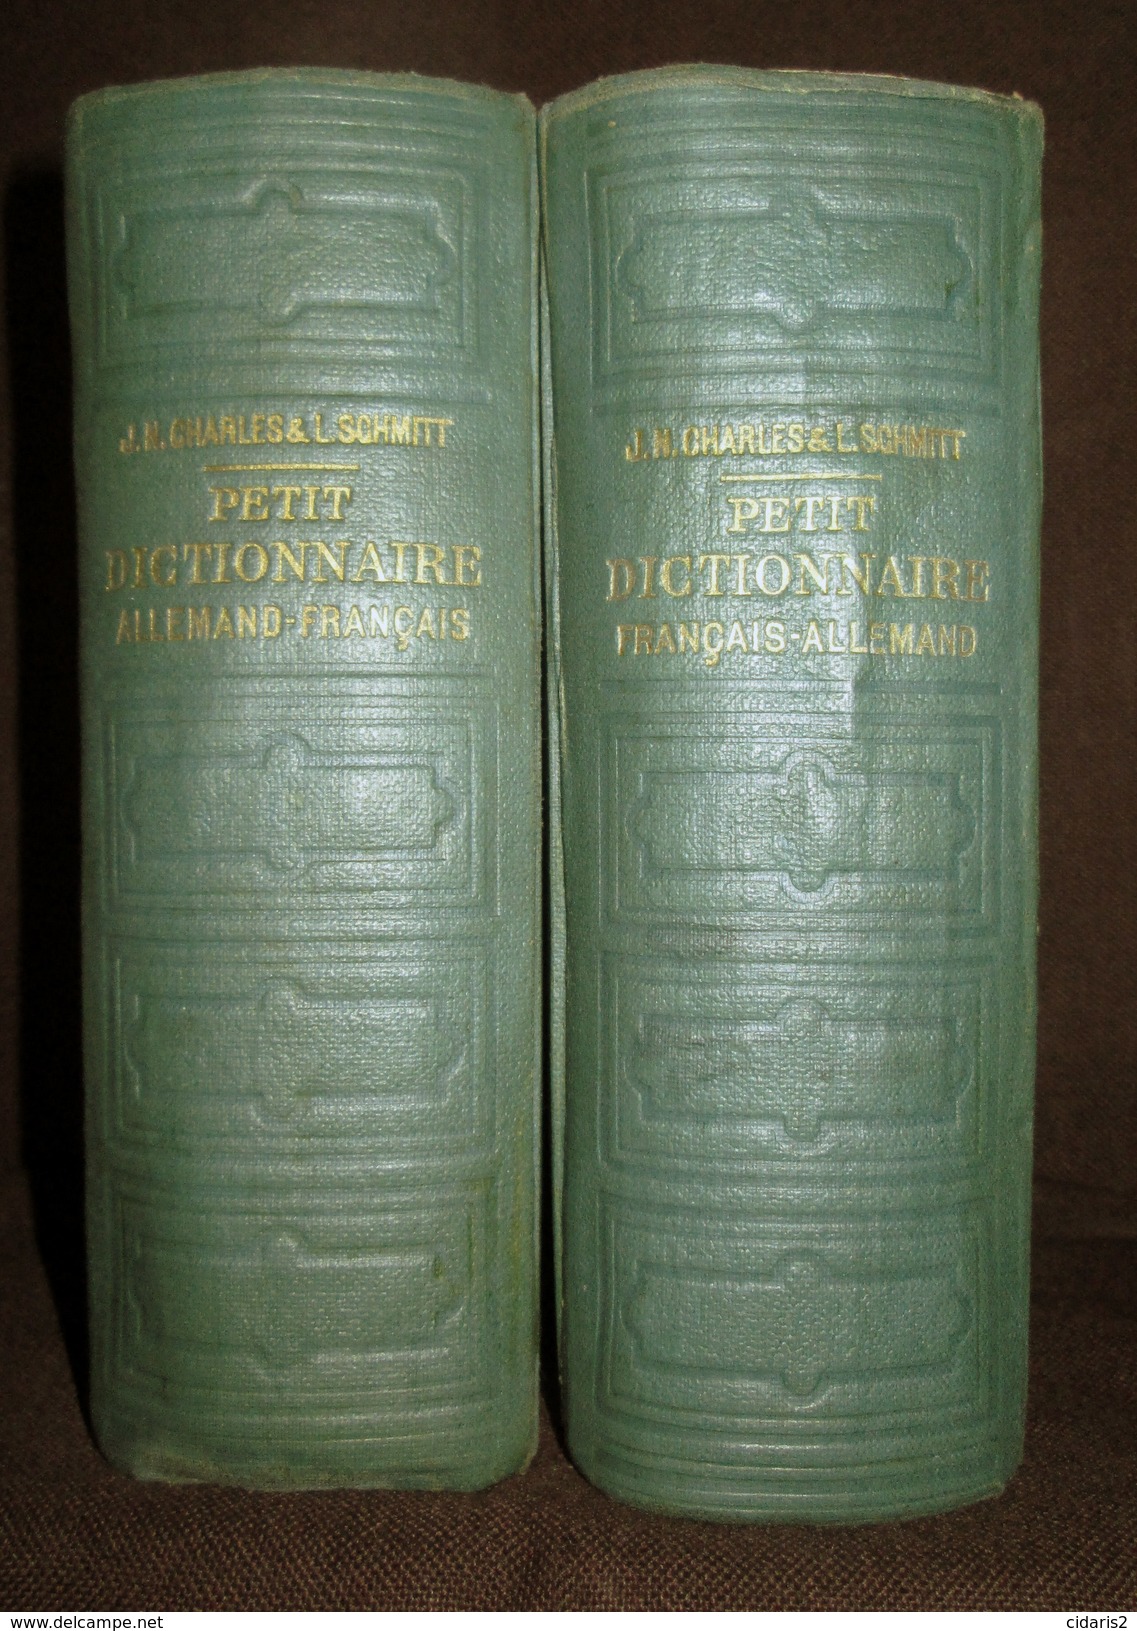 PETIT DICTIONNAIRE FRANCAIS ALLEMAND Franzosisch Deutsch Worterbuch Dictionary CHARLES SCHMITT 2 Volumes 1940 ! - Wörterbücher 